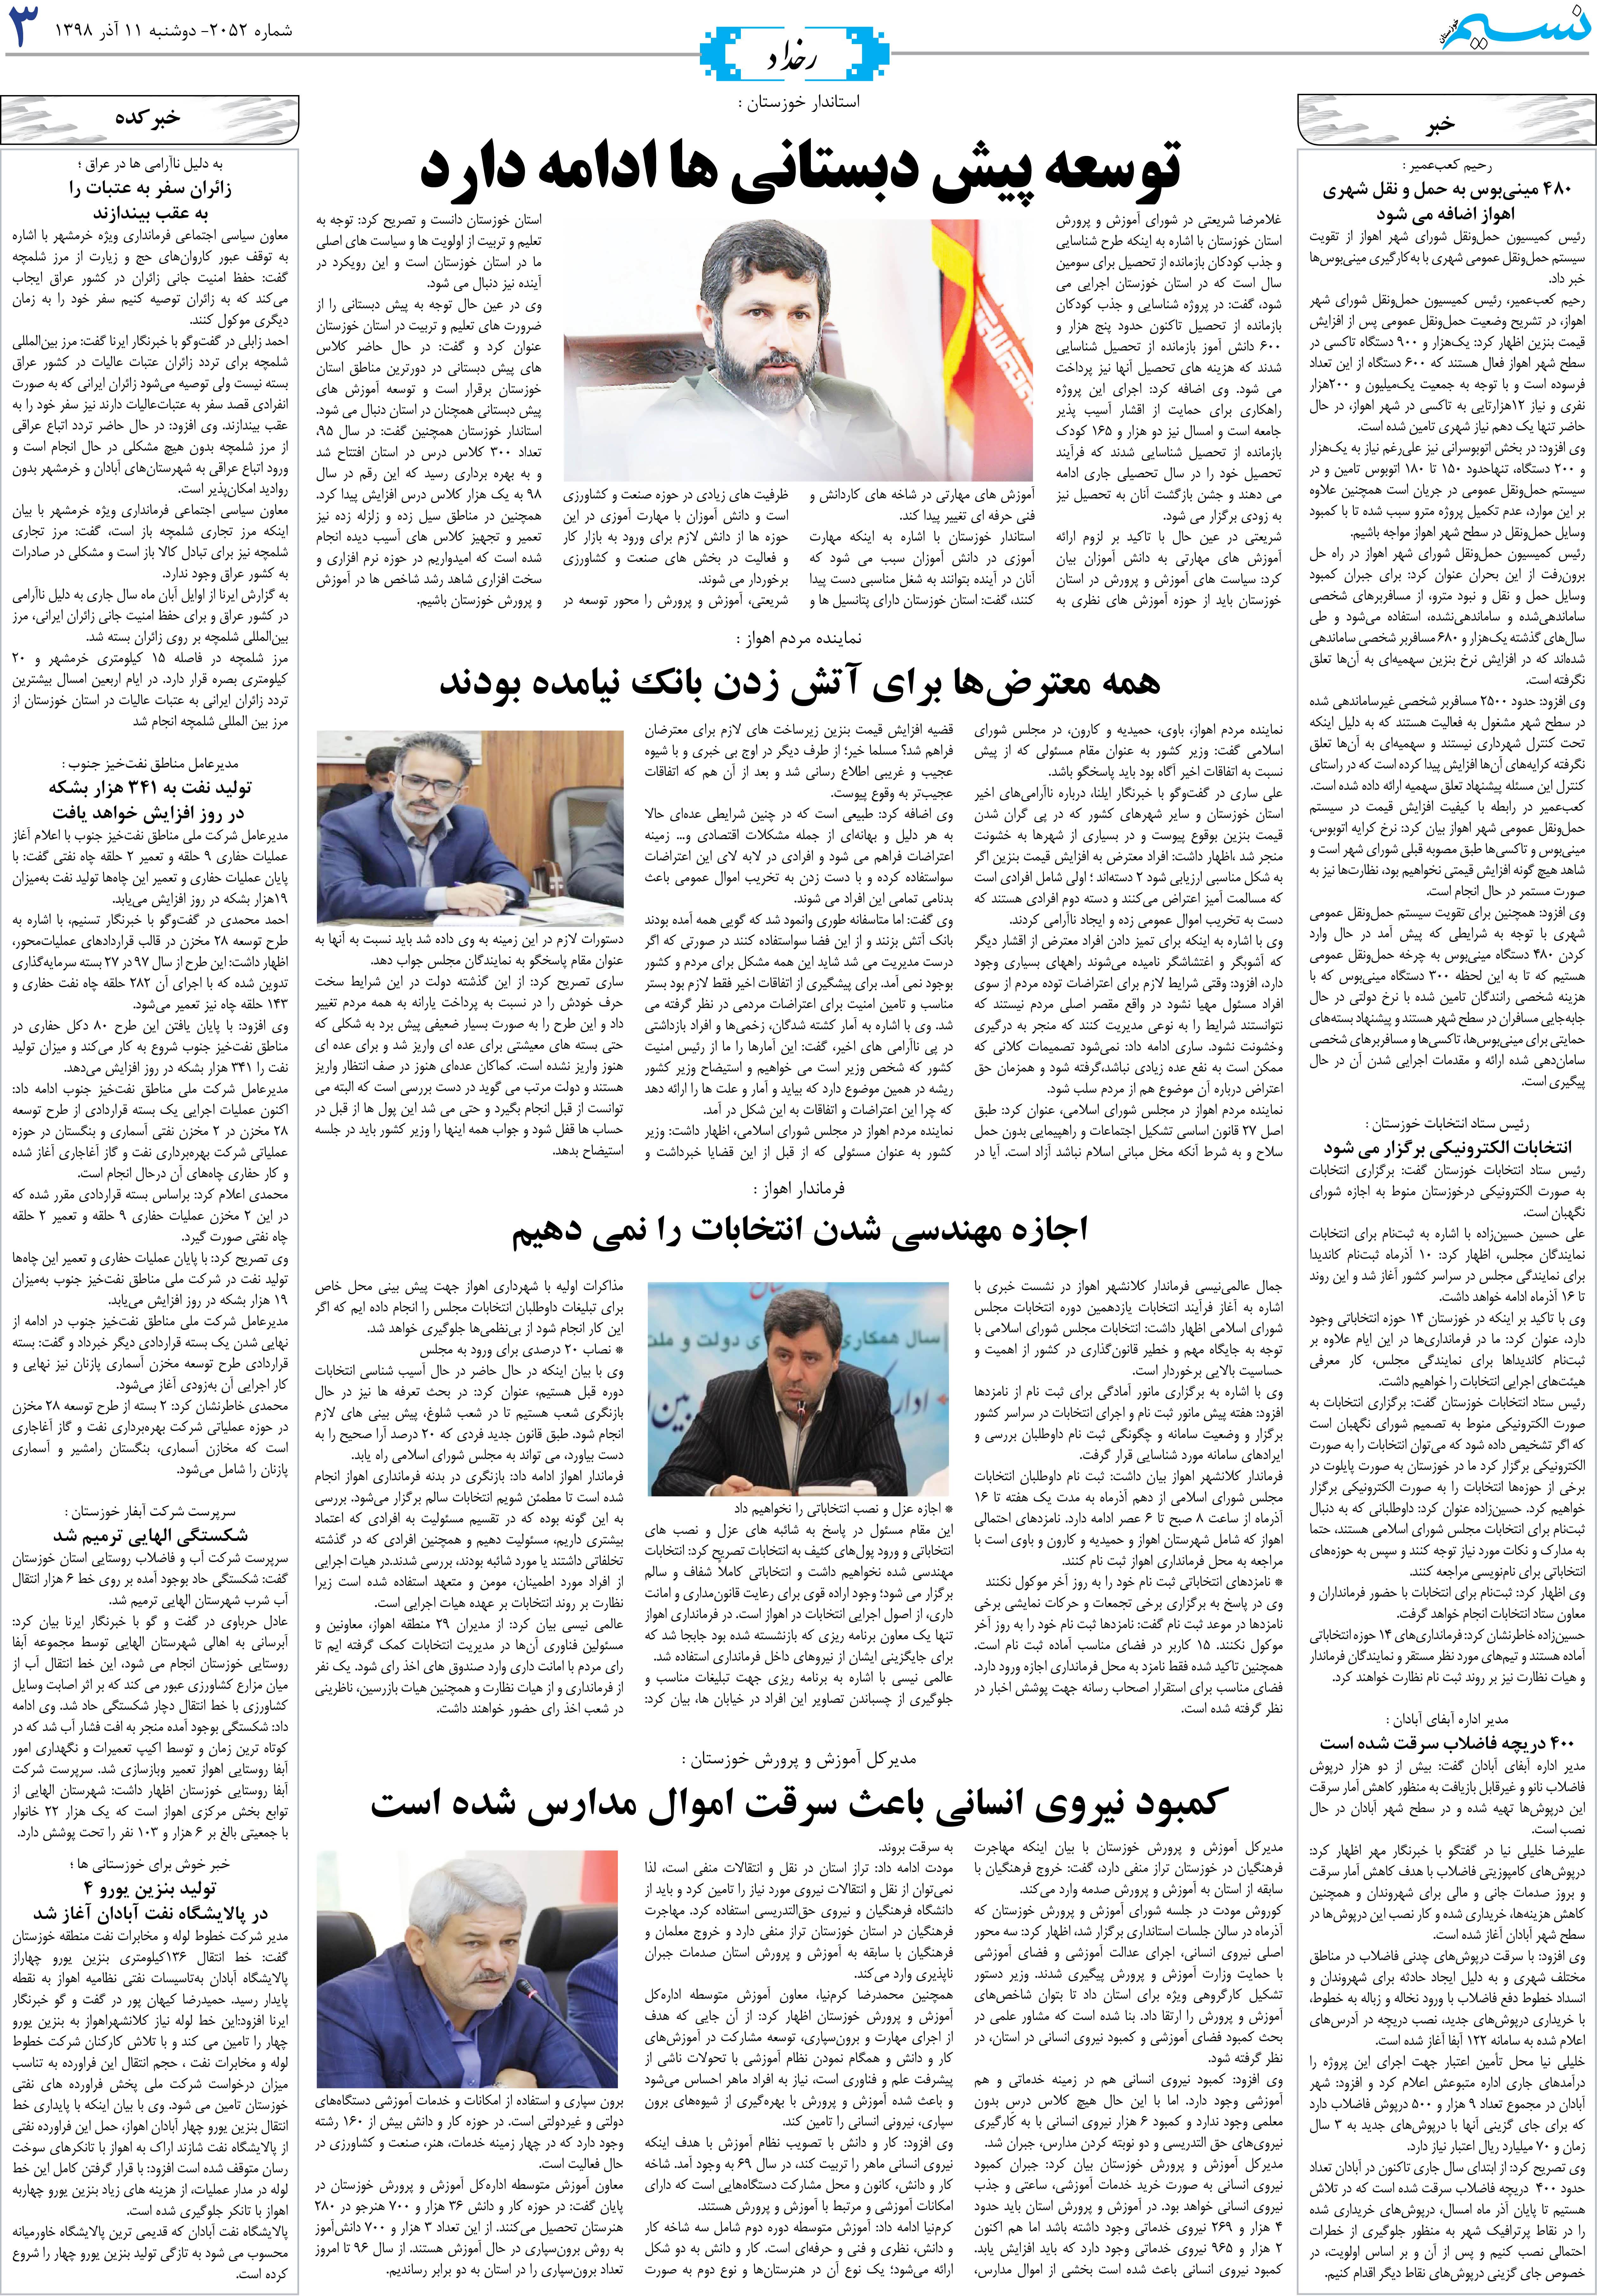 صفحه رخداد روزنامه نسیم شماره 2052